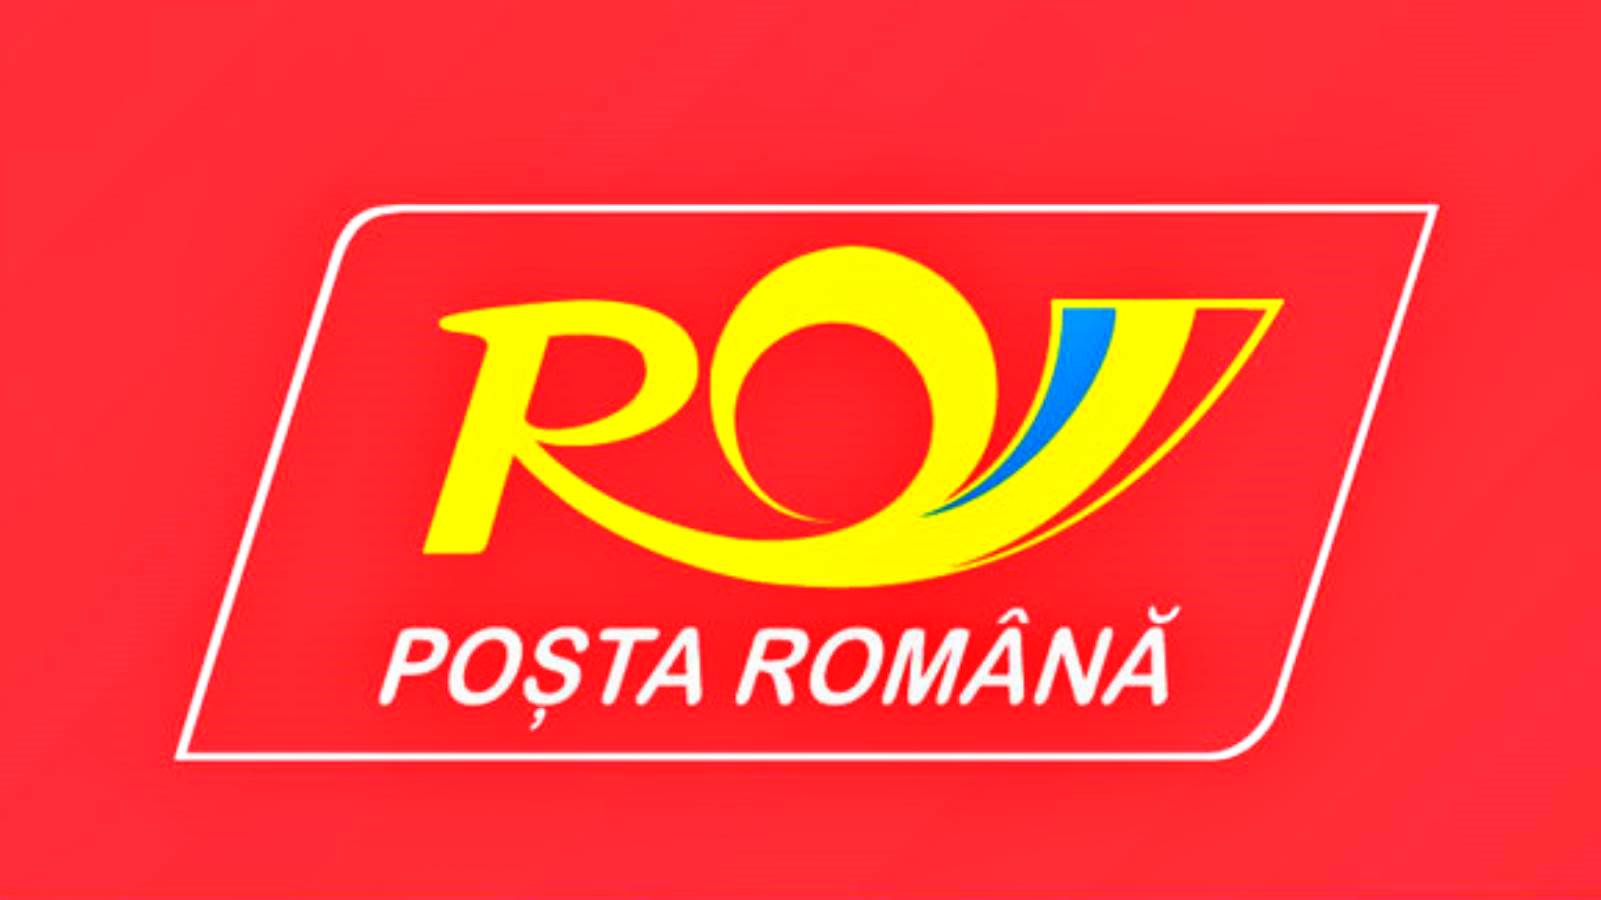 De maatregelen die de Roemeense Post heeft aangekondigd voor Roemenen in het hele land